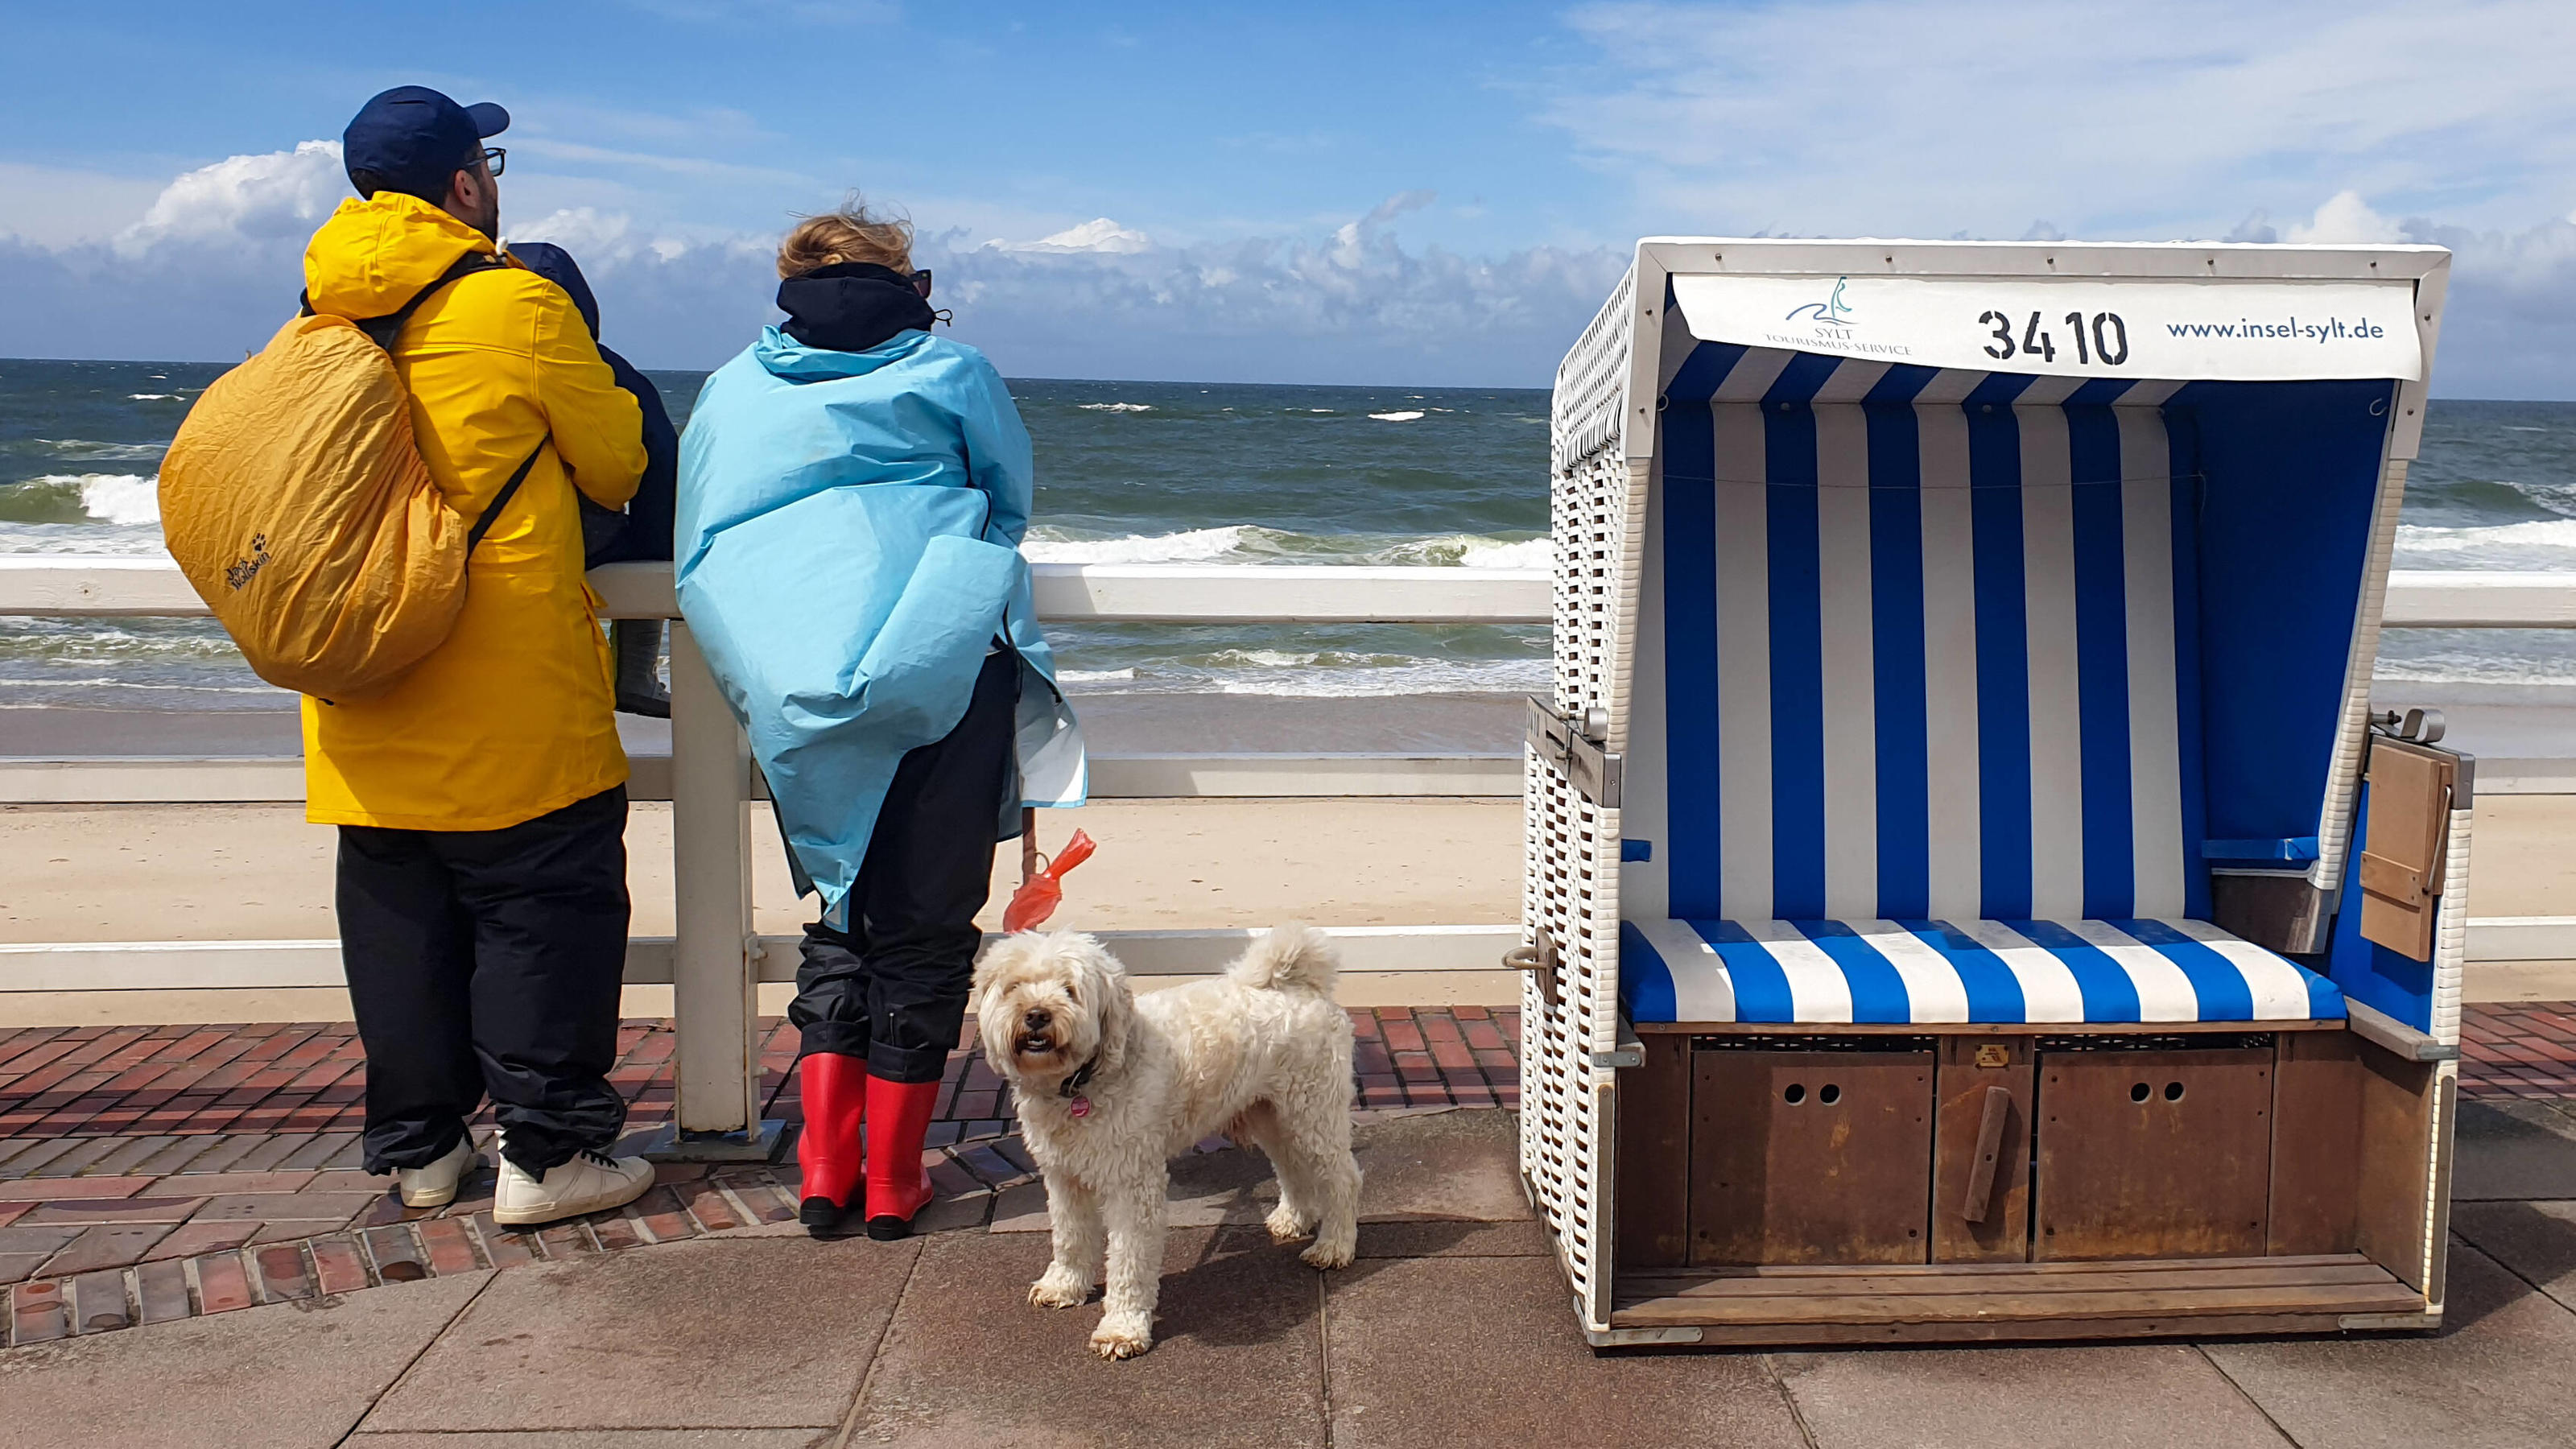 Strandaussicht in Regenbekleidung in Westerland auf der Insel Sylt an der Nordsee.